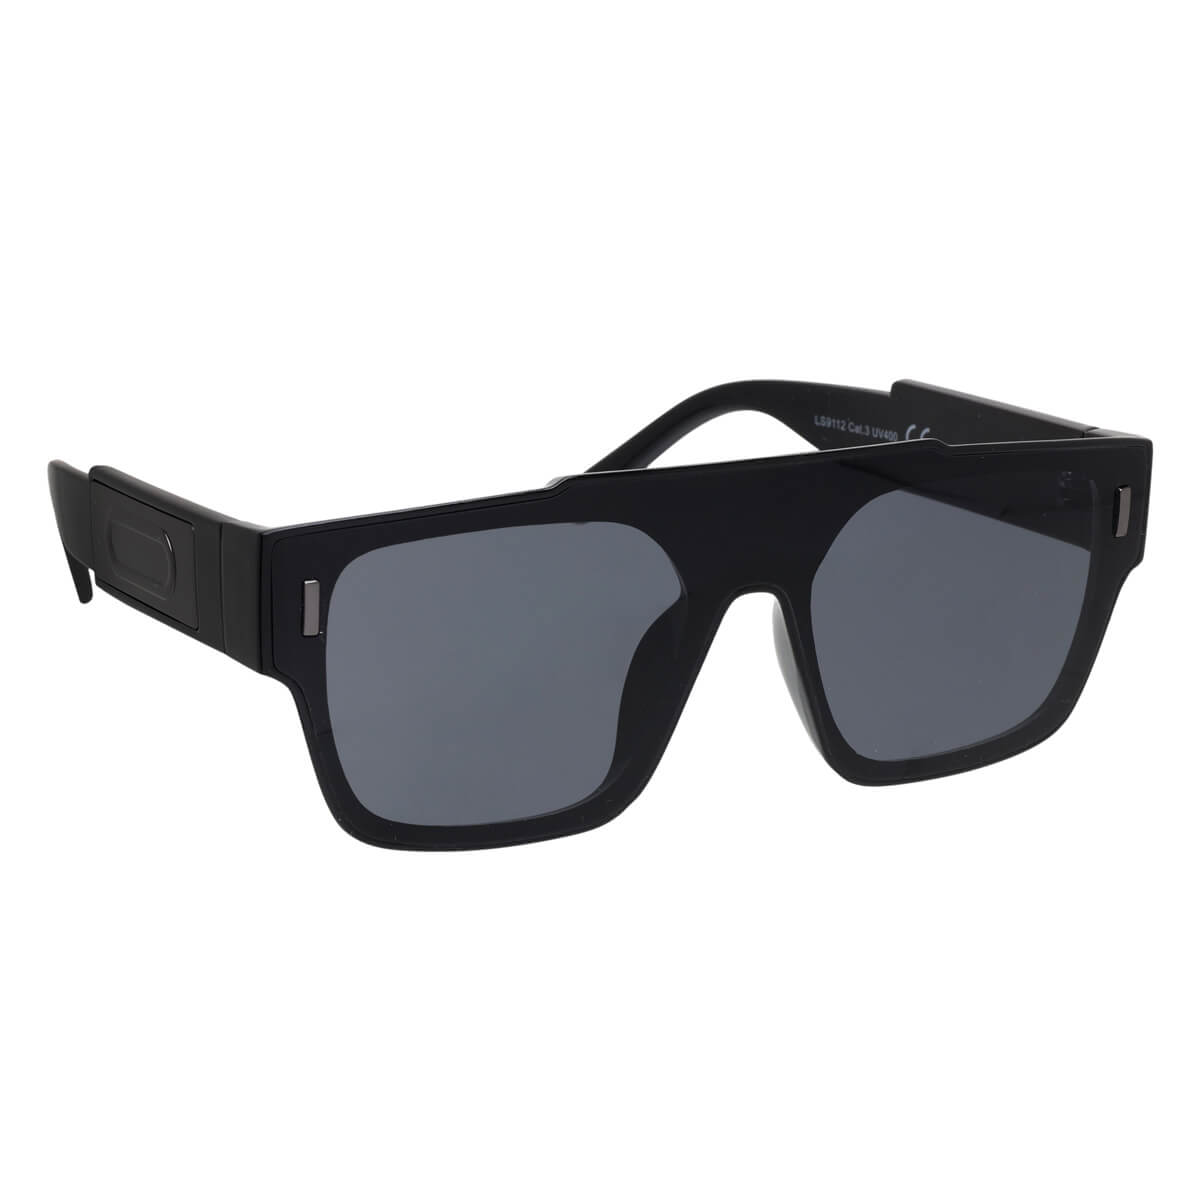 Flat angled sunglasses flat top